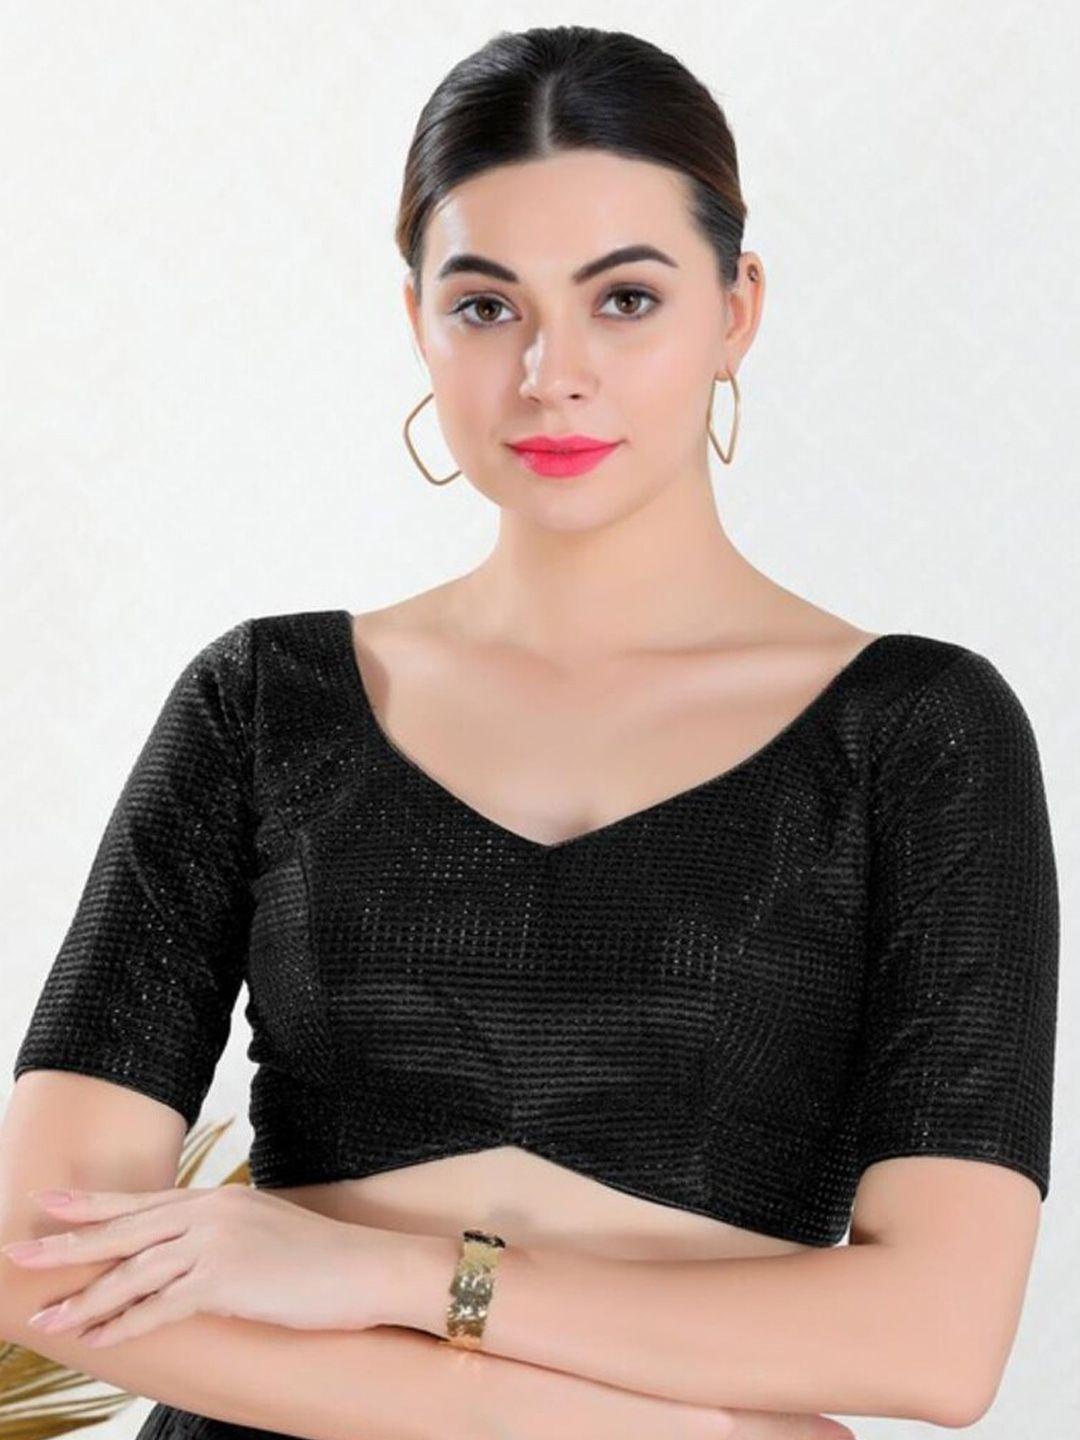 salwar studio woven design saree blouse